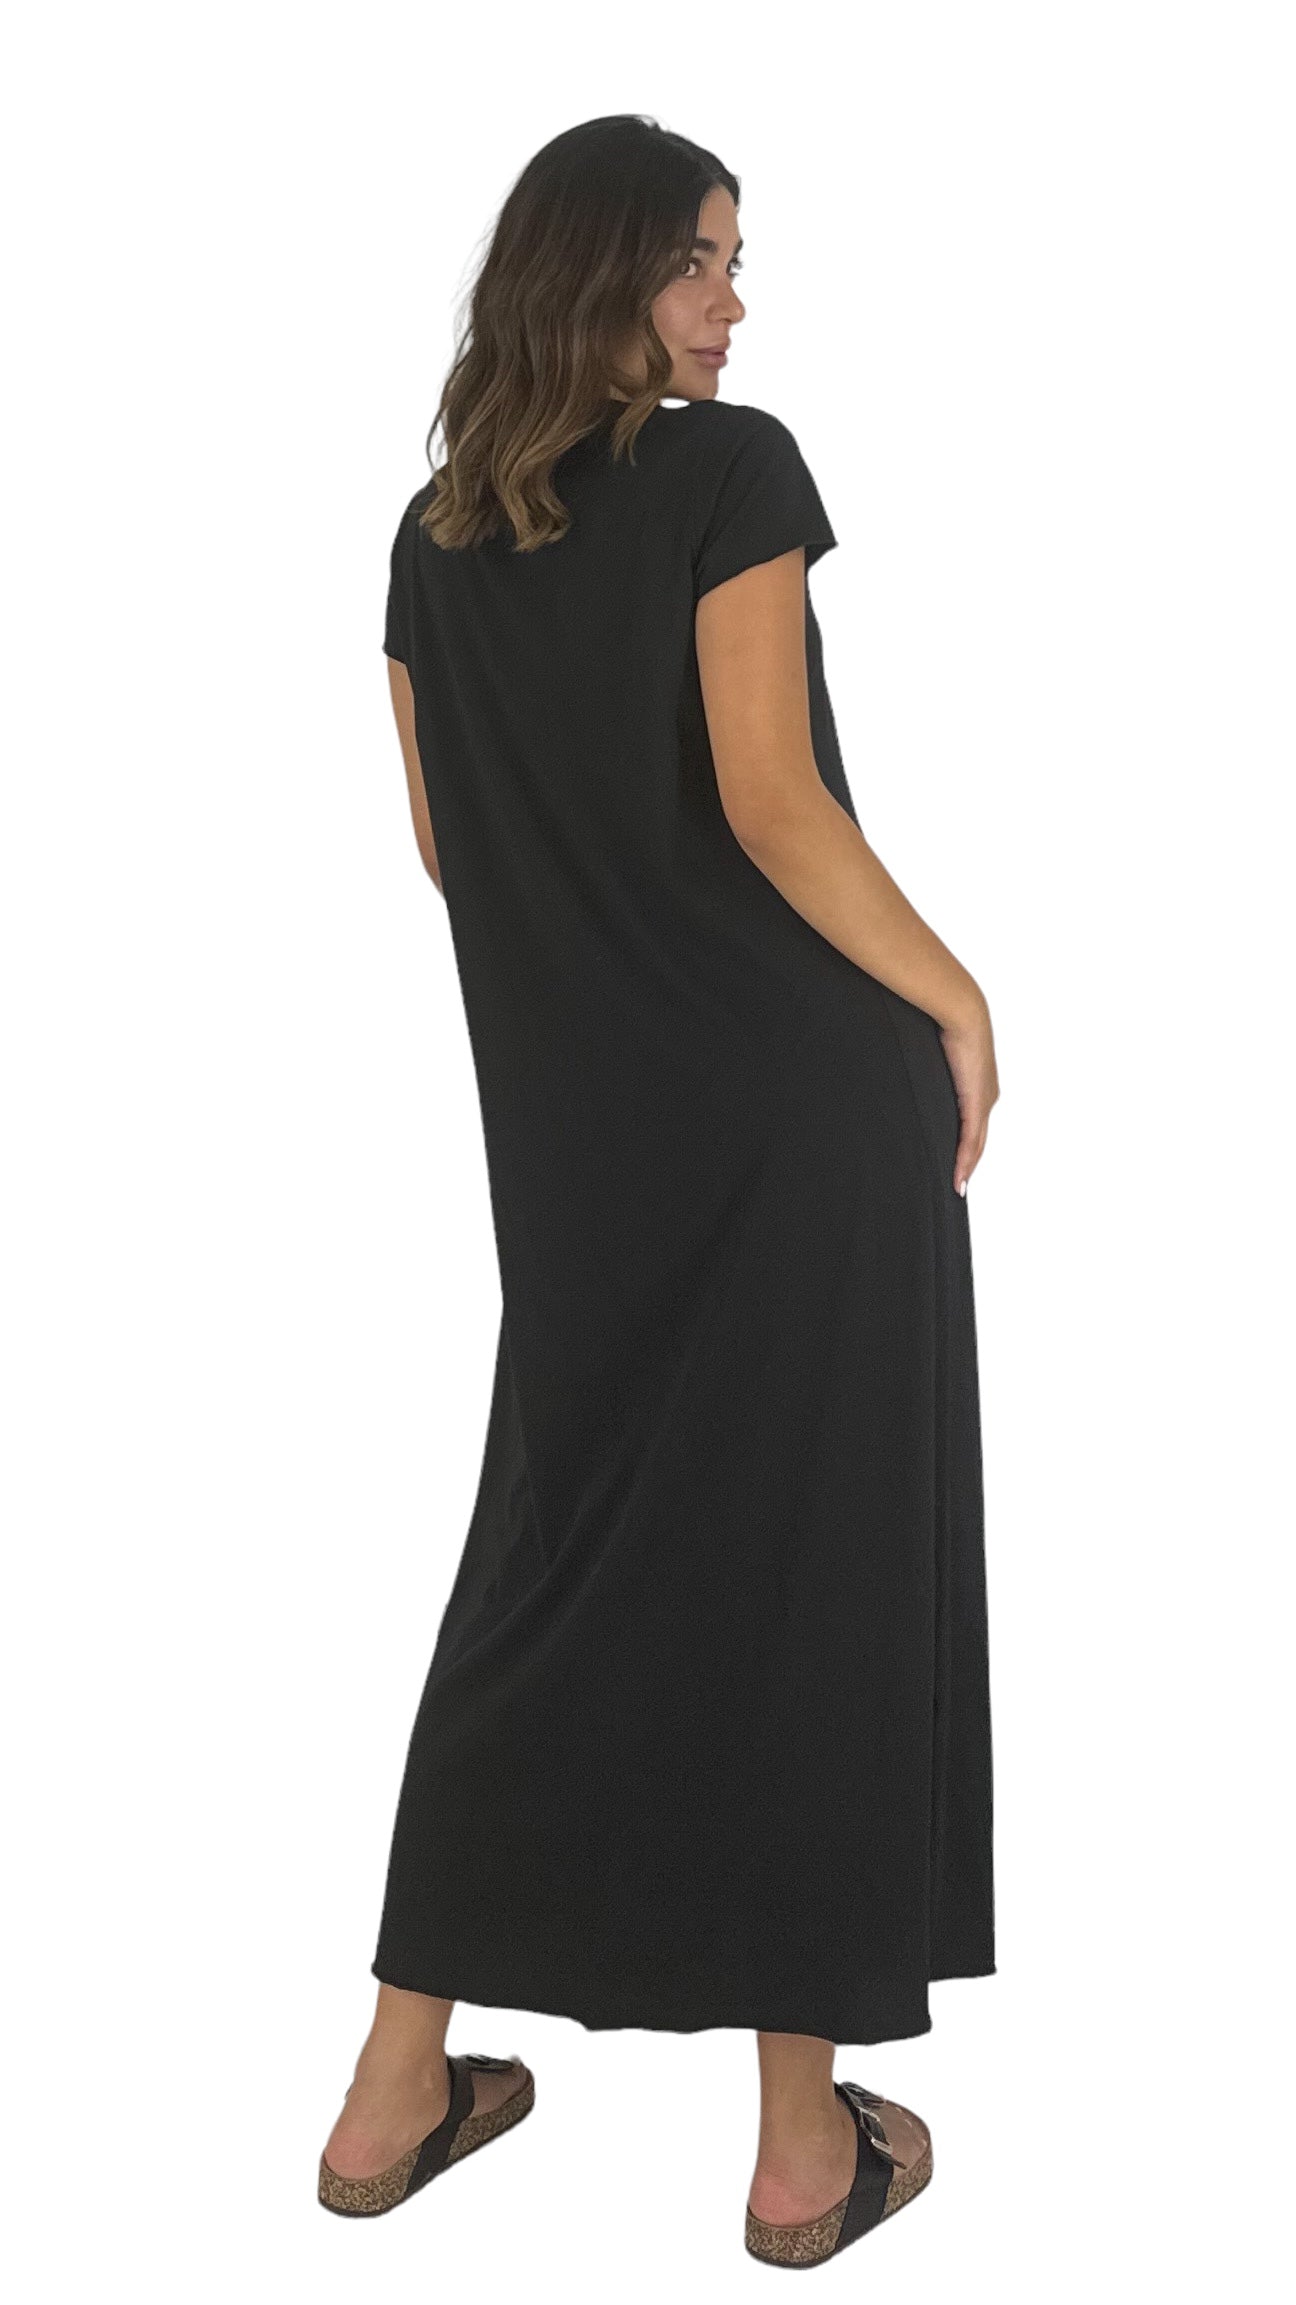 Sicilia black dress